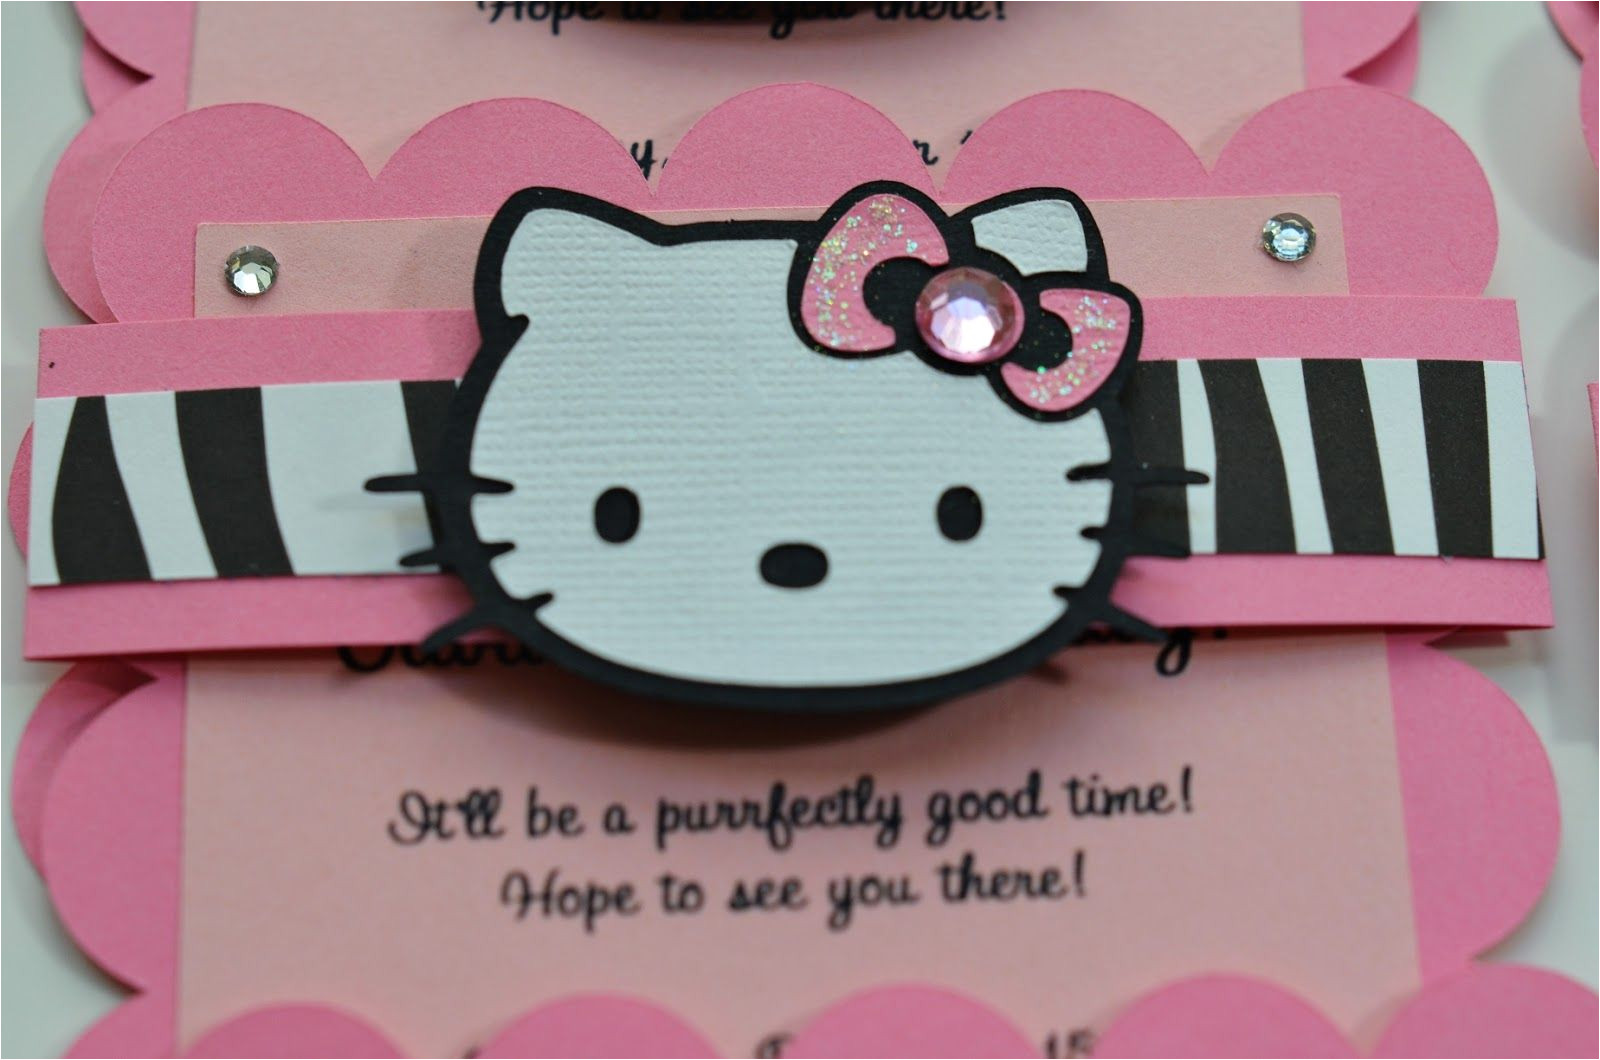 Handmade Hello Kitty Birthday Card Hello Kitty Birthday Party Invitations with Images Hello